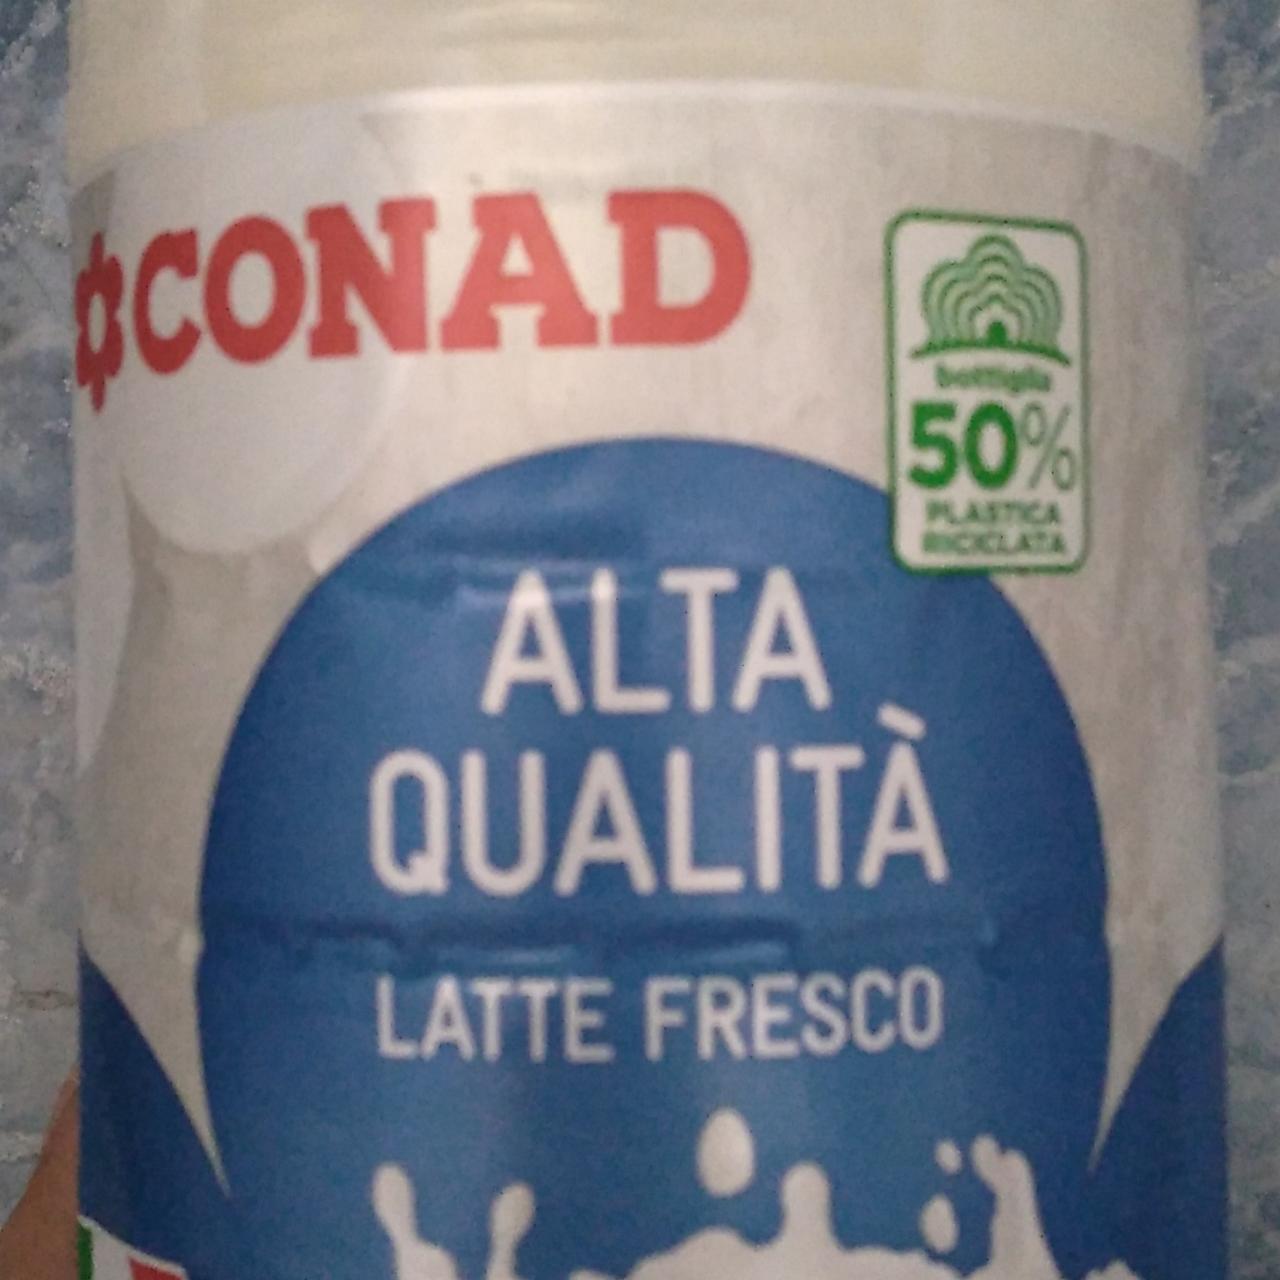 Fotografie - Alta qualita latte fresco Conad